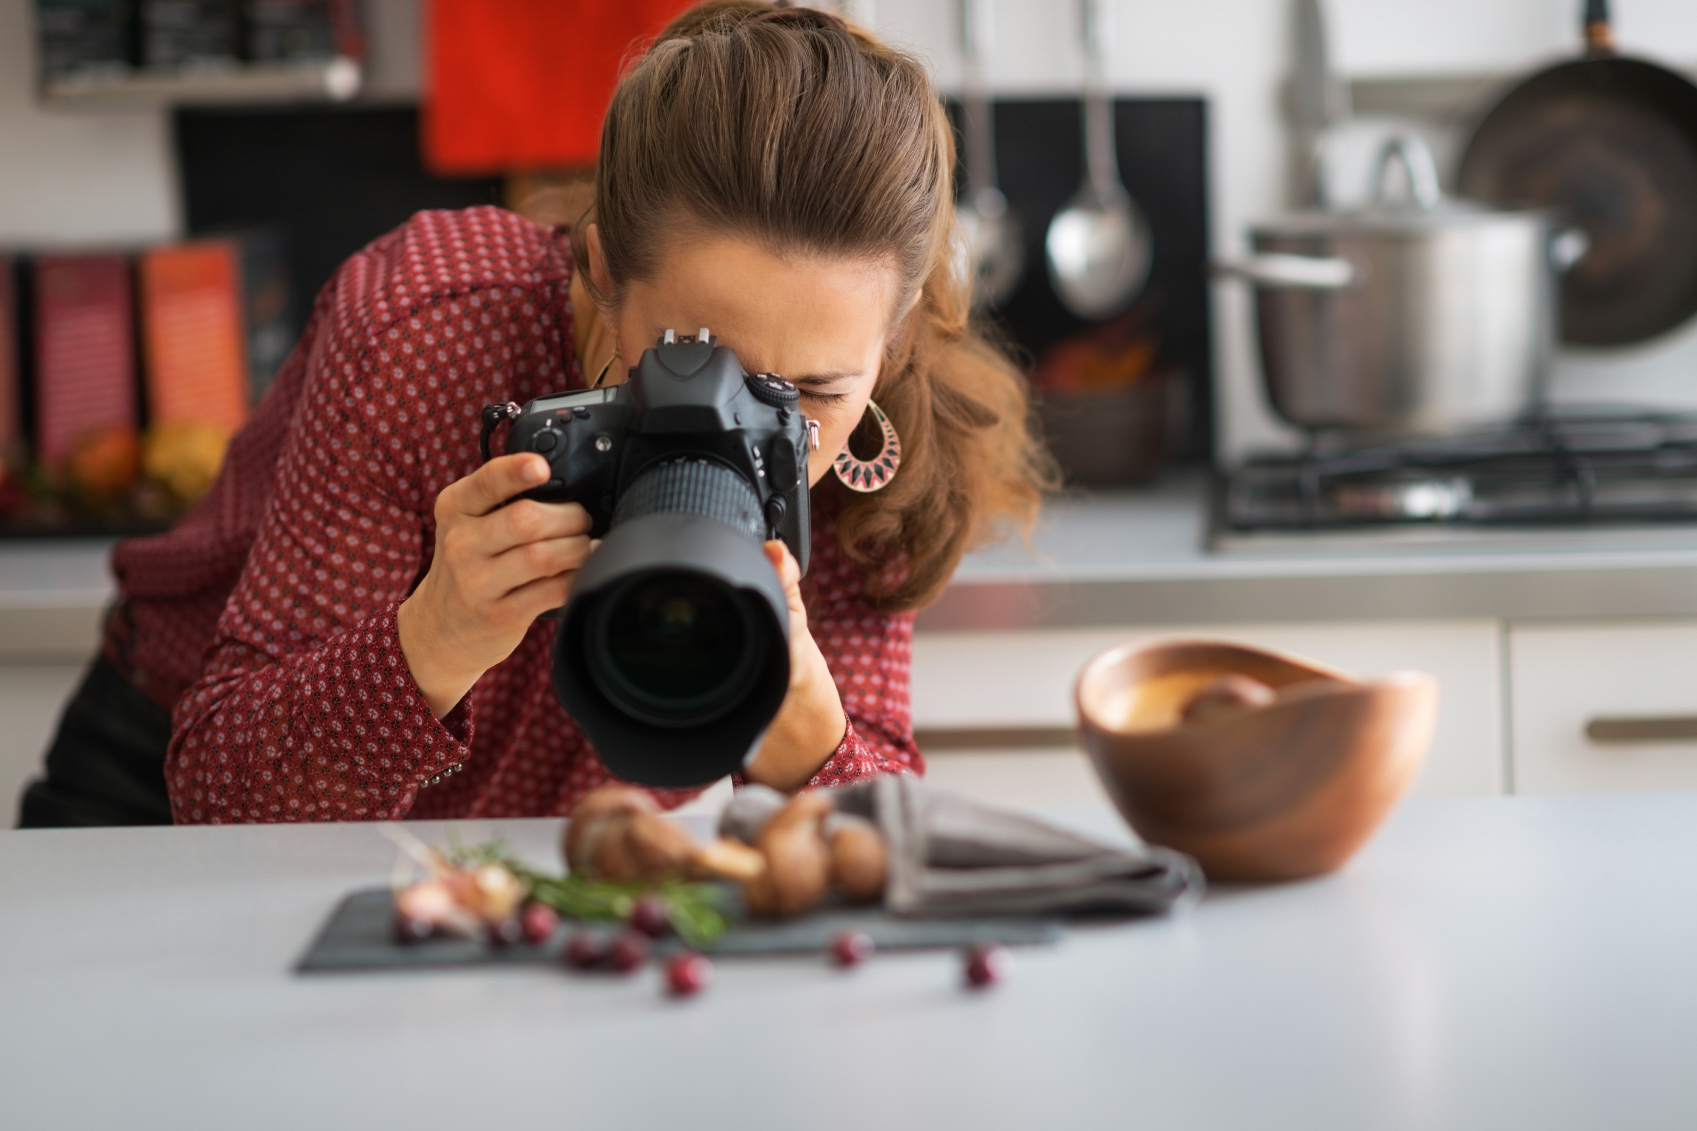 Включи фотограф. Фуд фотограф. Фотосъемка еды. Девушка фотографирует еду. Человек фотографирует еду.